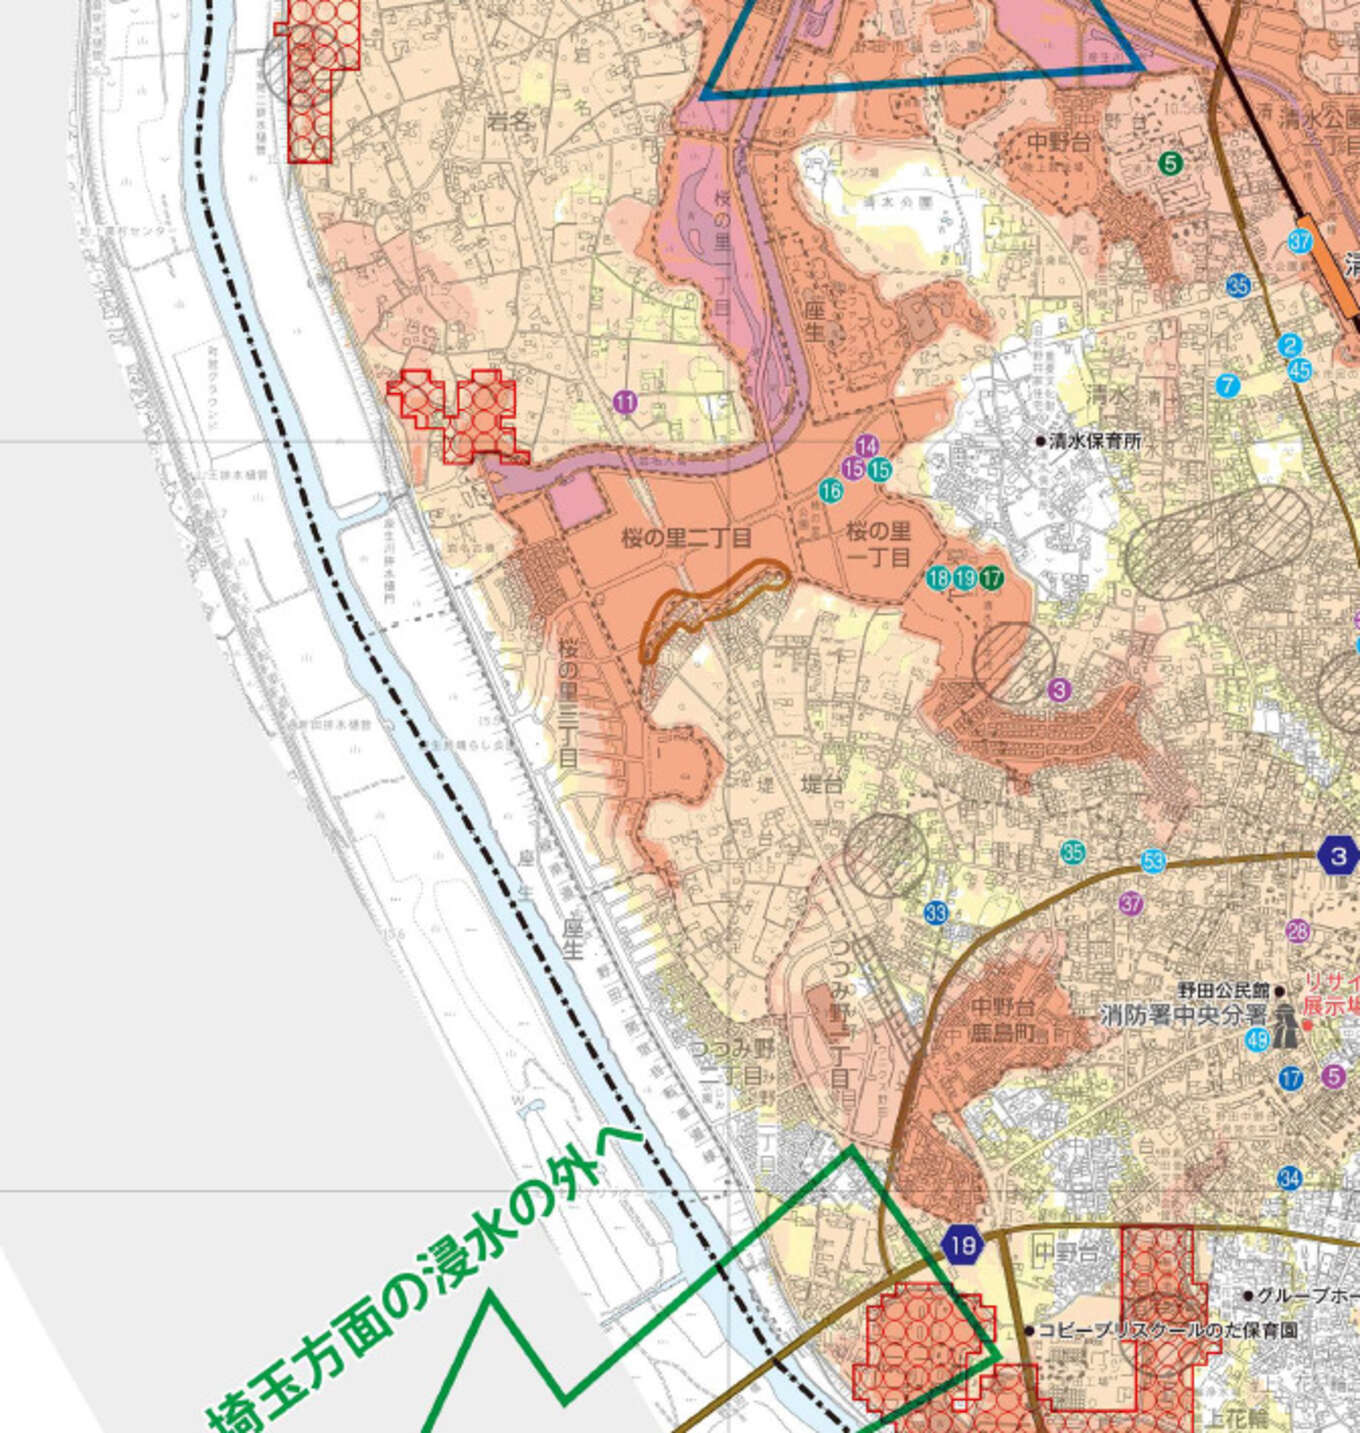 野田市座生地区と堤台地区のハザードマップ